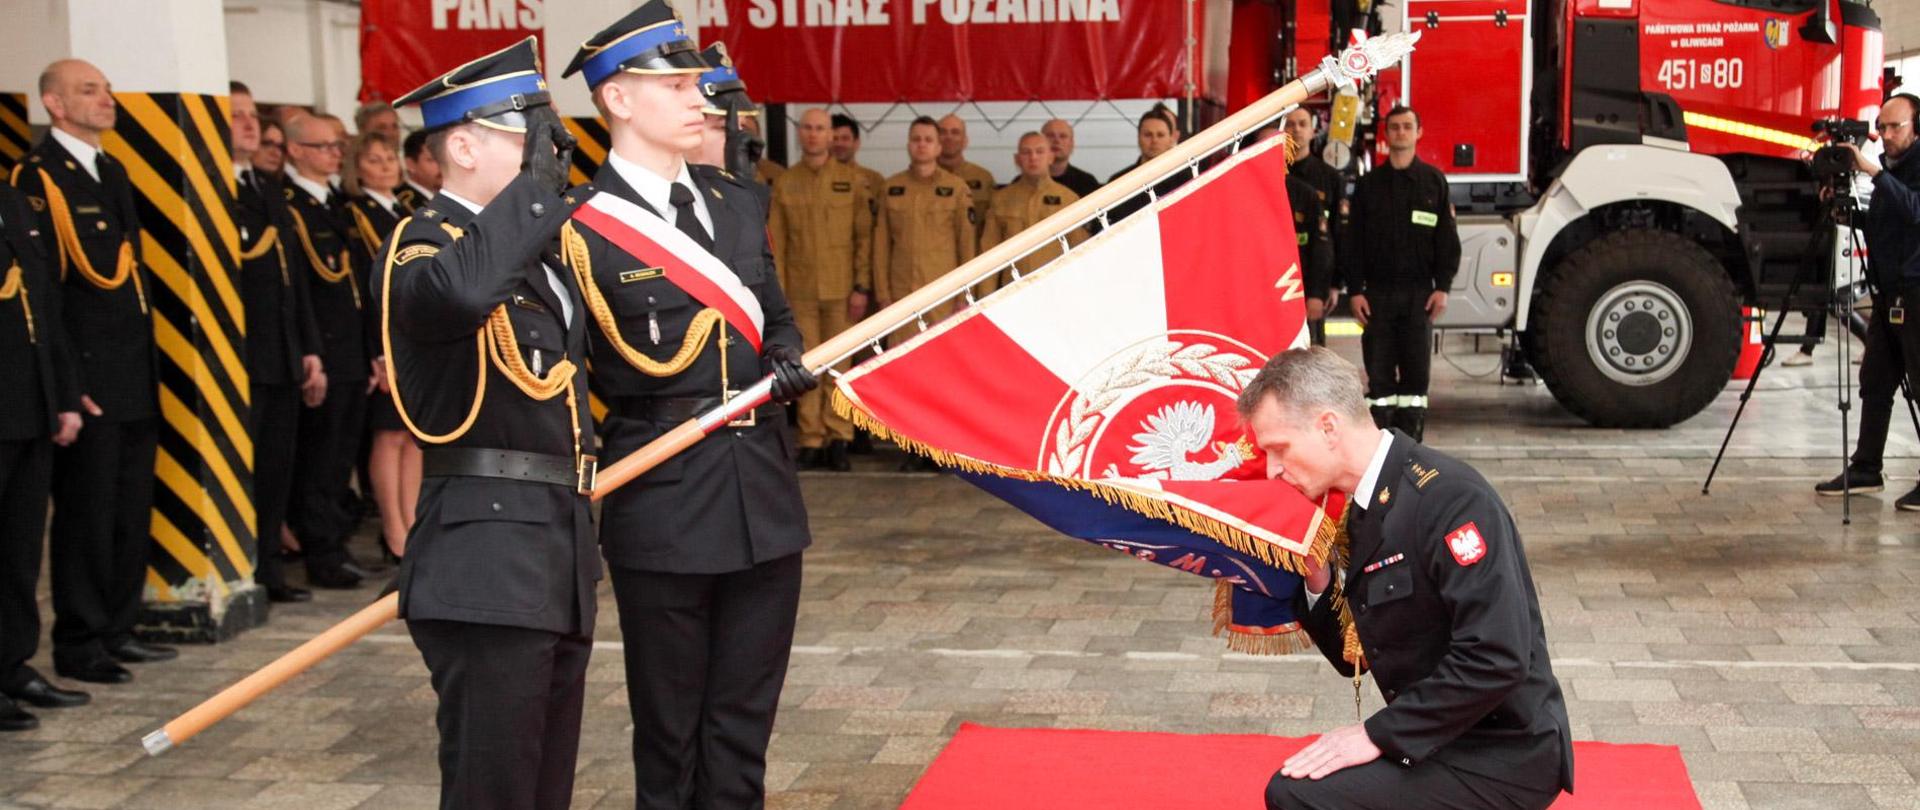 Uroczysta zbiórka z okazji powołania na stanowisko Komendanta Miejskiego Państwowej Straży Pożarnej w Gliwicach